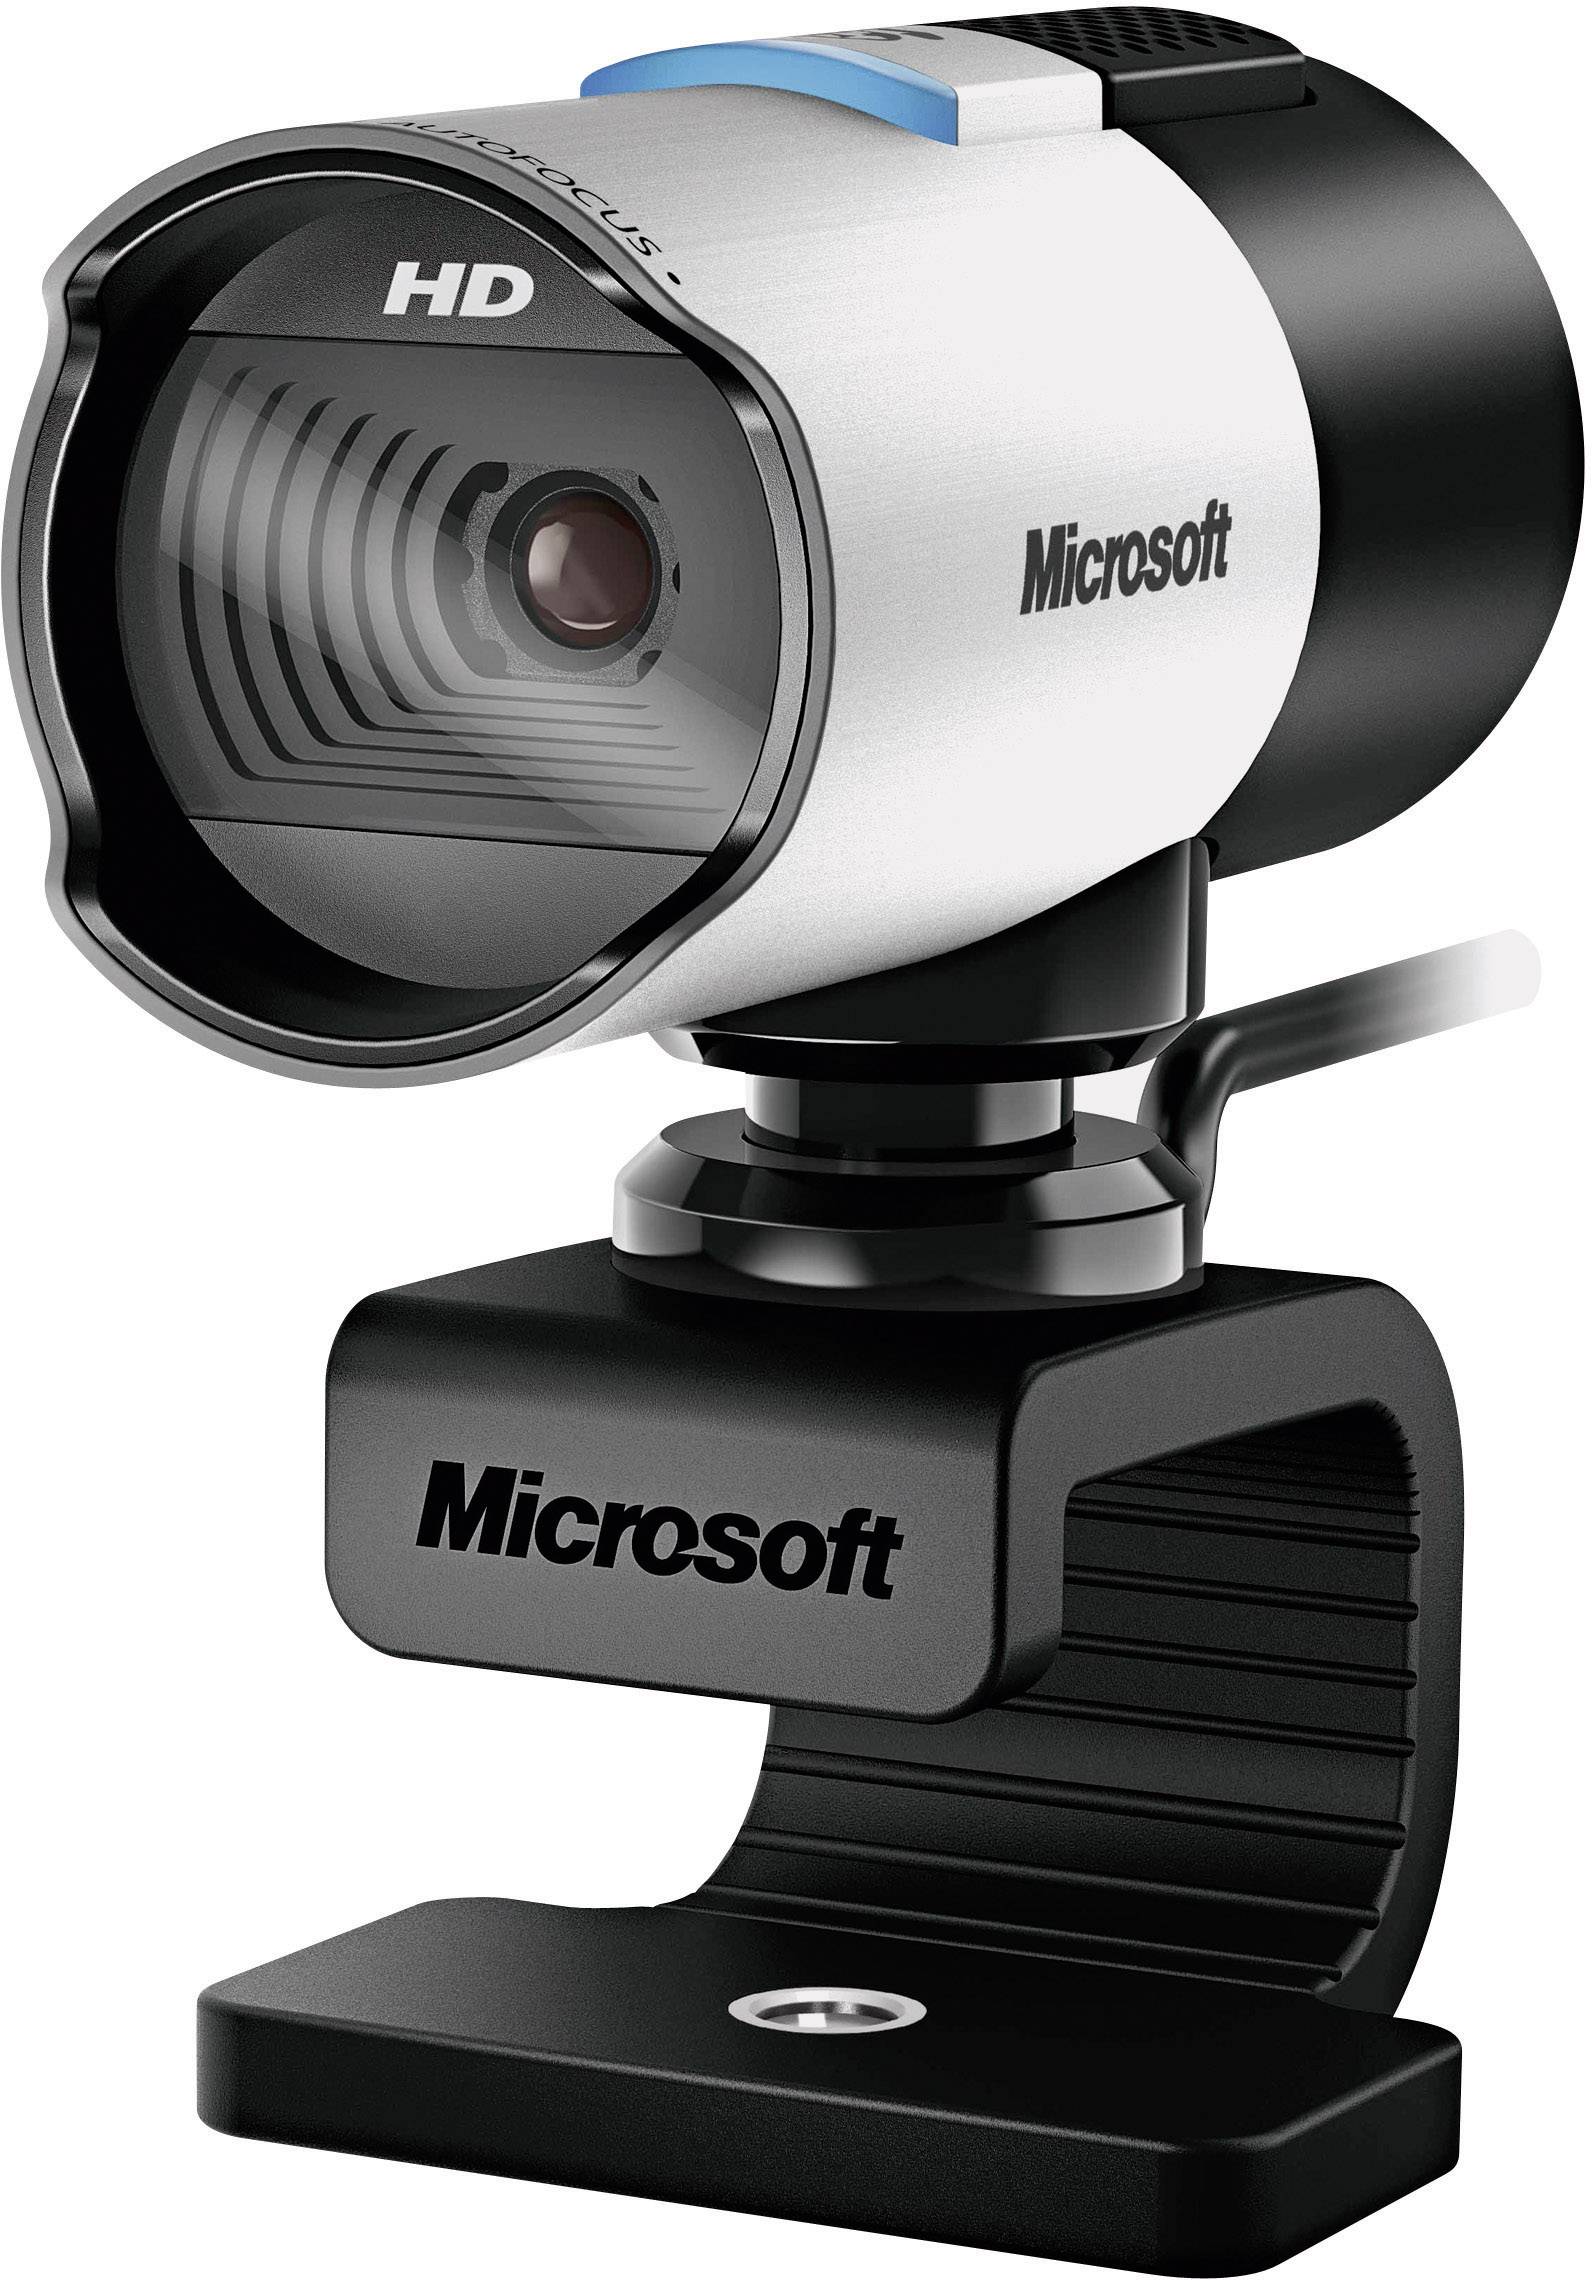 Real lifecam Microsoft Webcam: